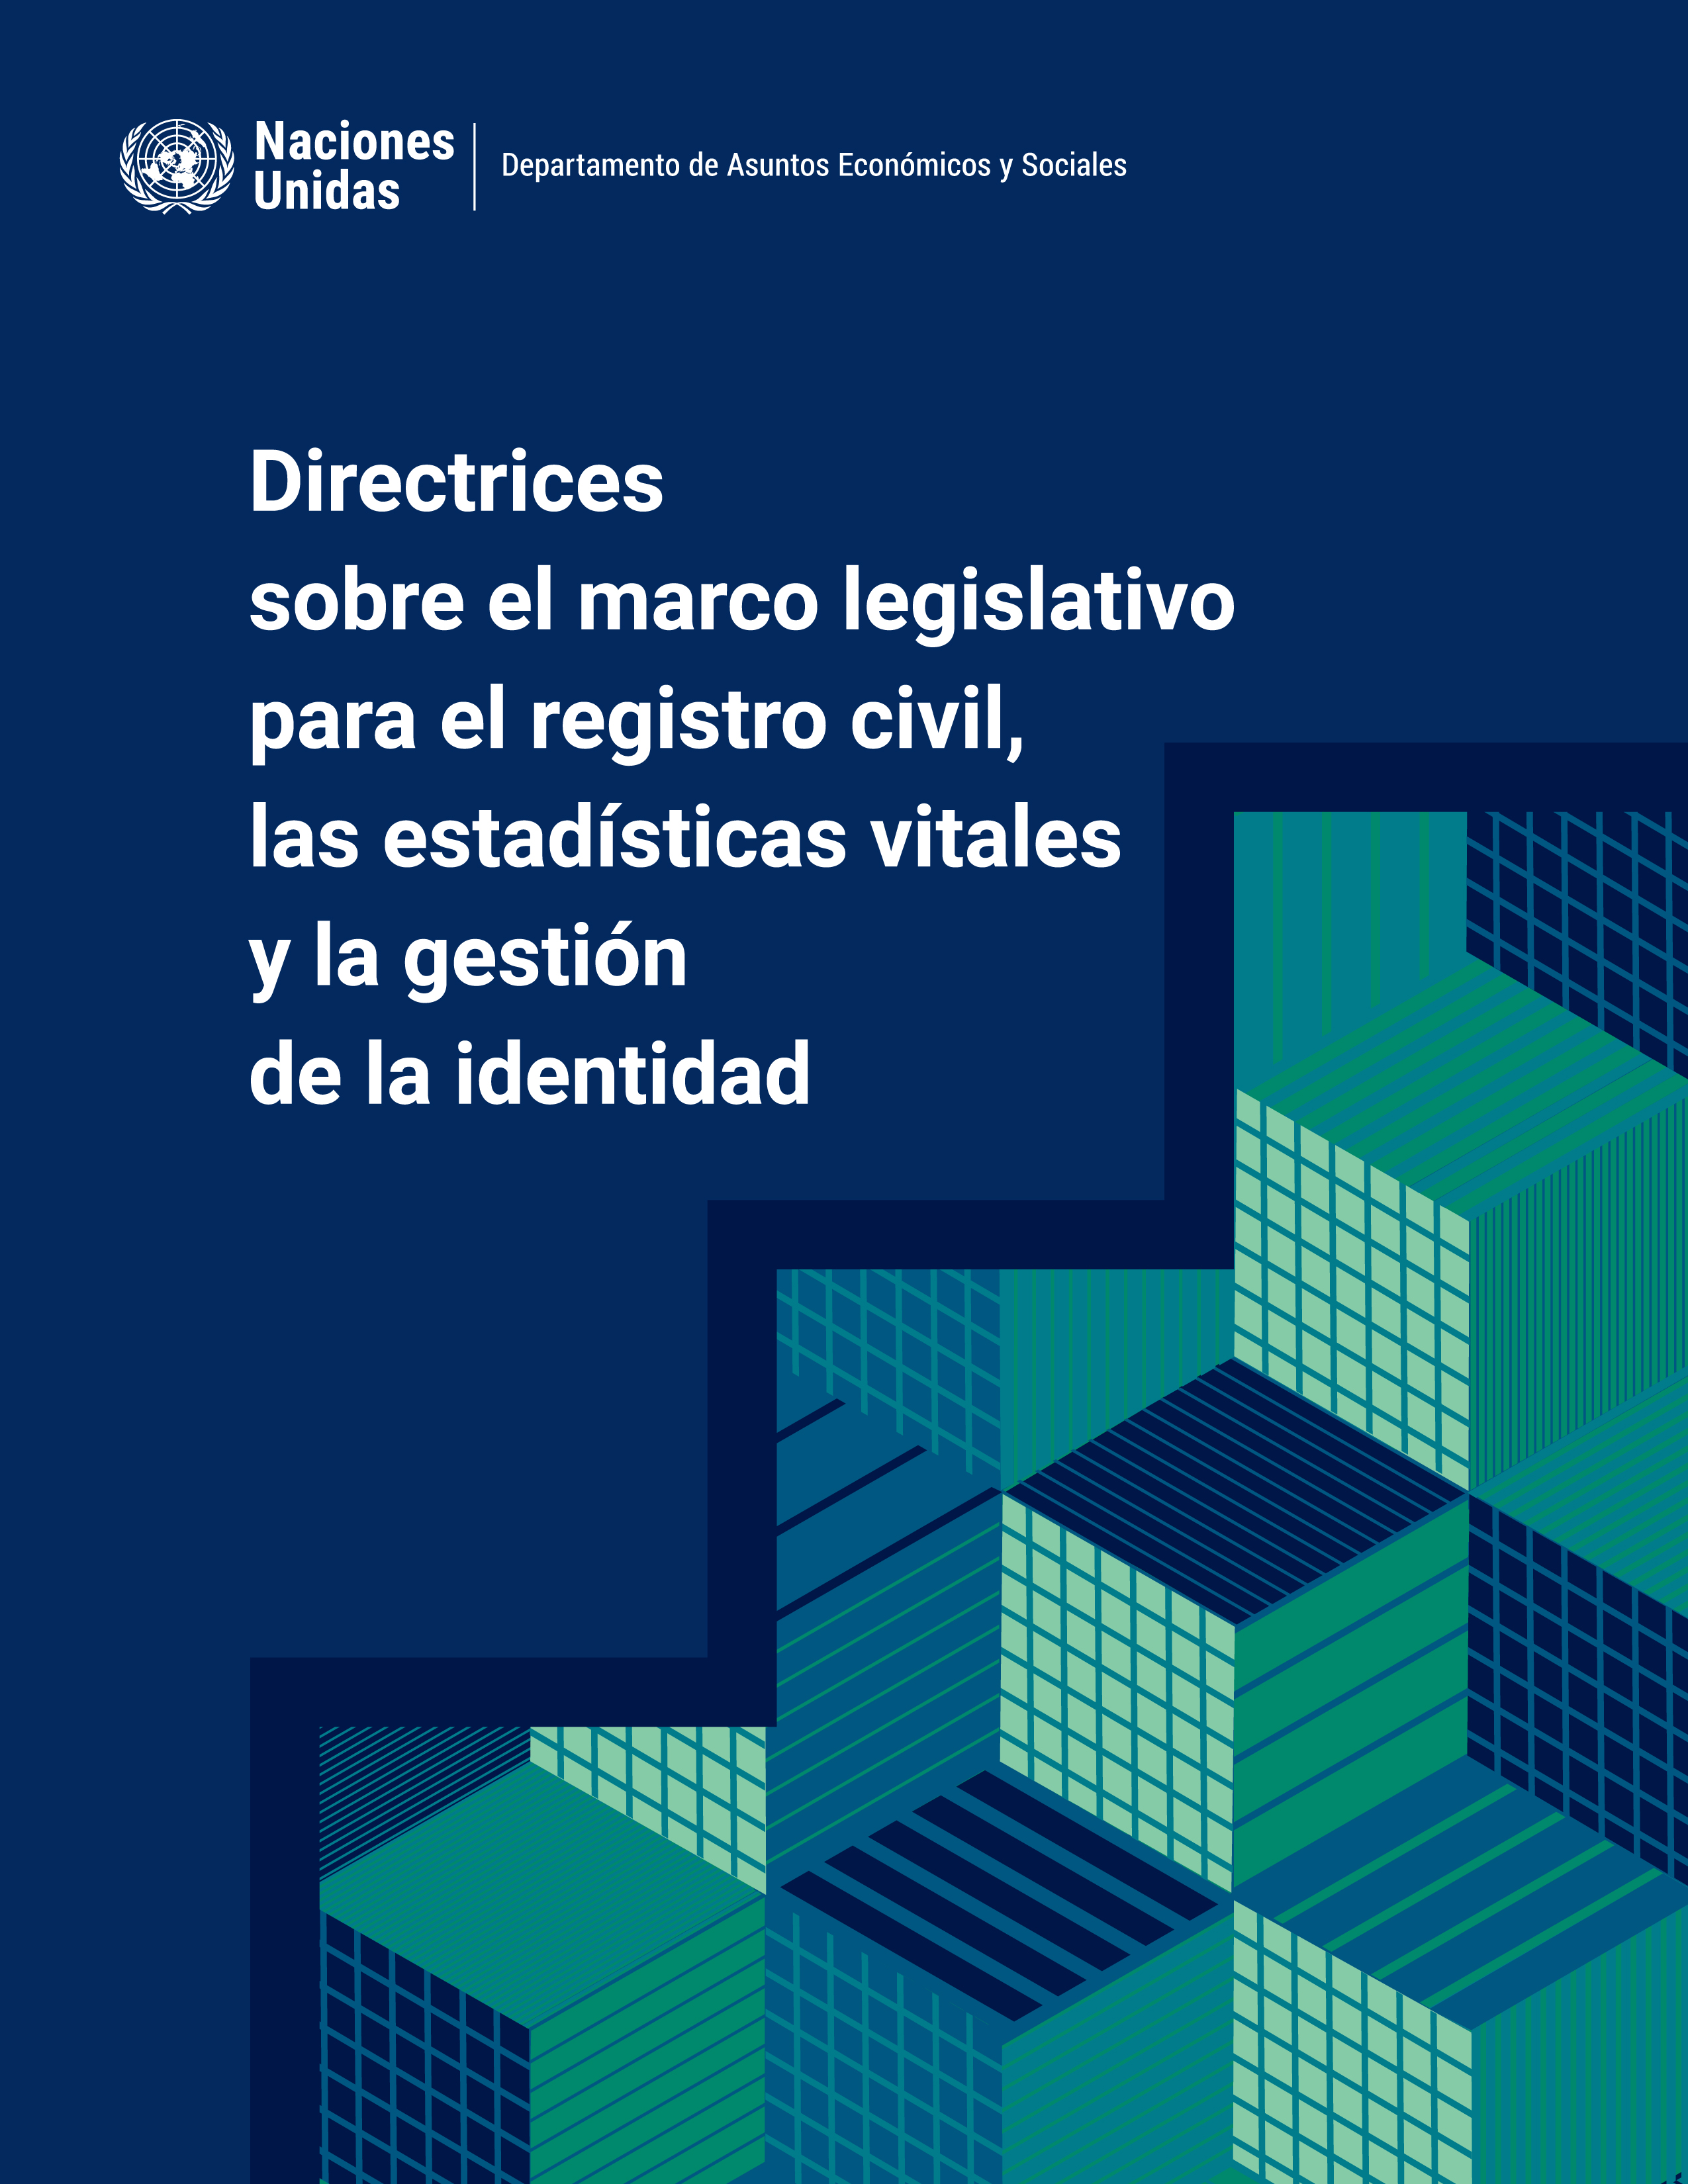 image of Directrices sobre el marco legislativo para el registro civil, las estadísticas vitales y la gestión de la identidad